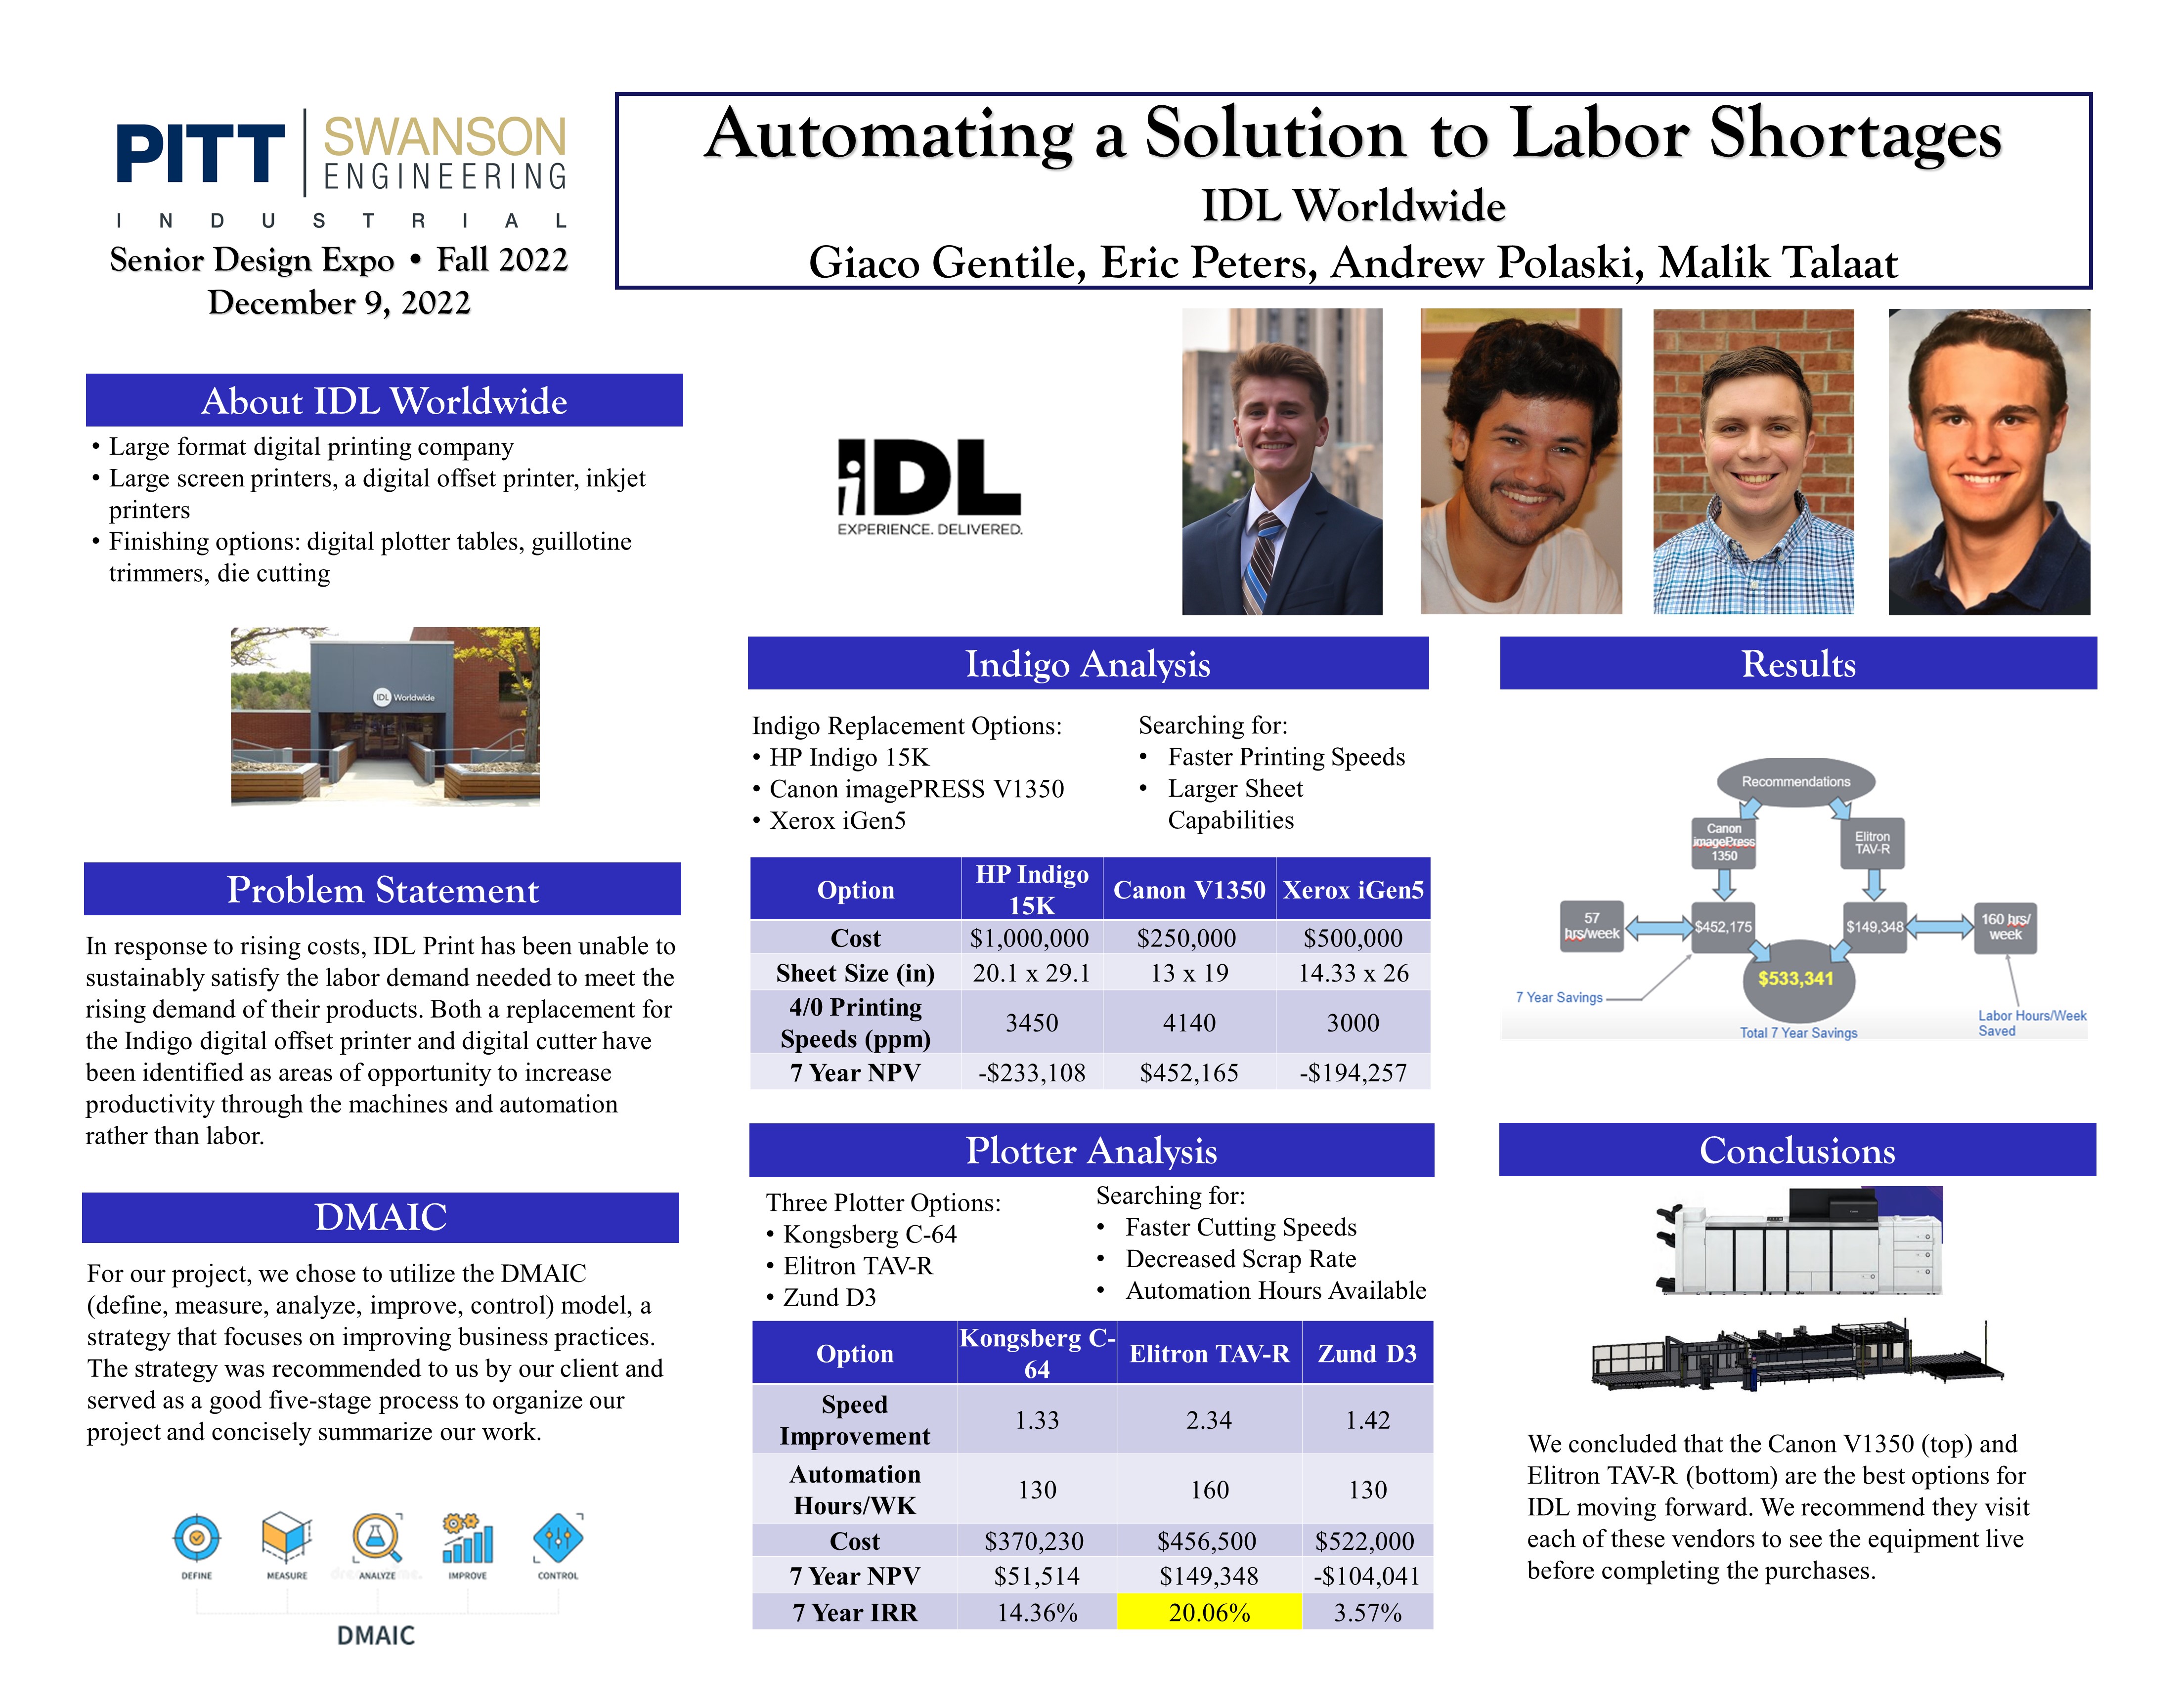 Automating a Solution to Labor Shortages  research poster